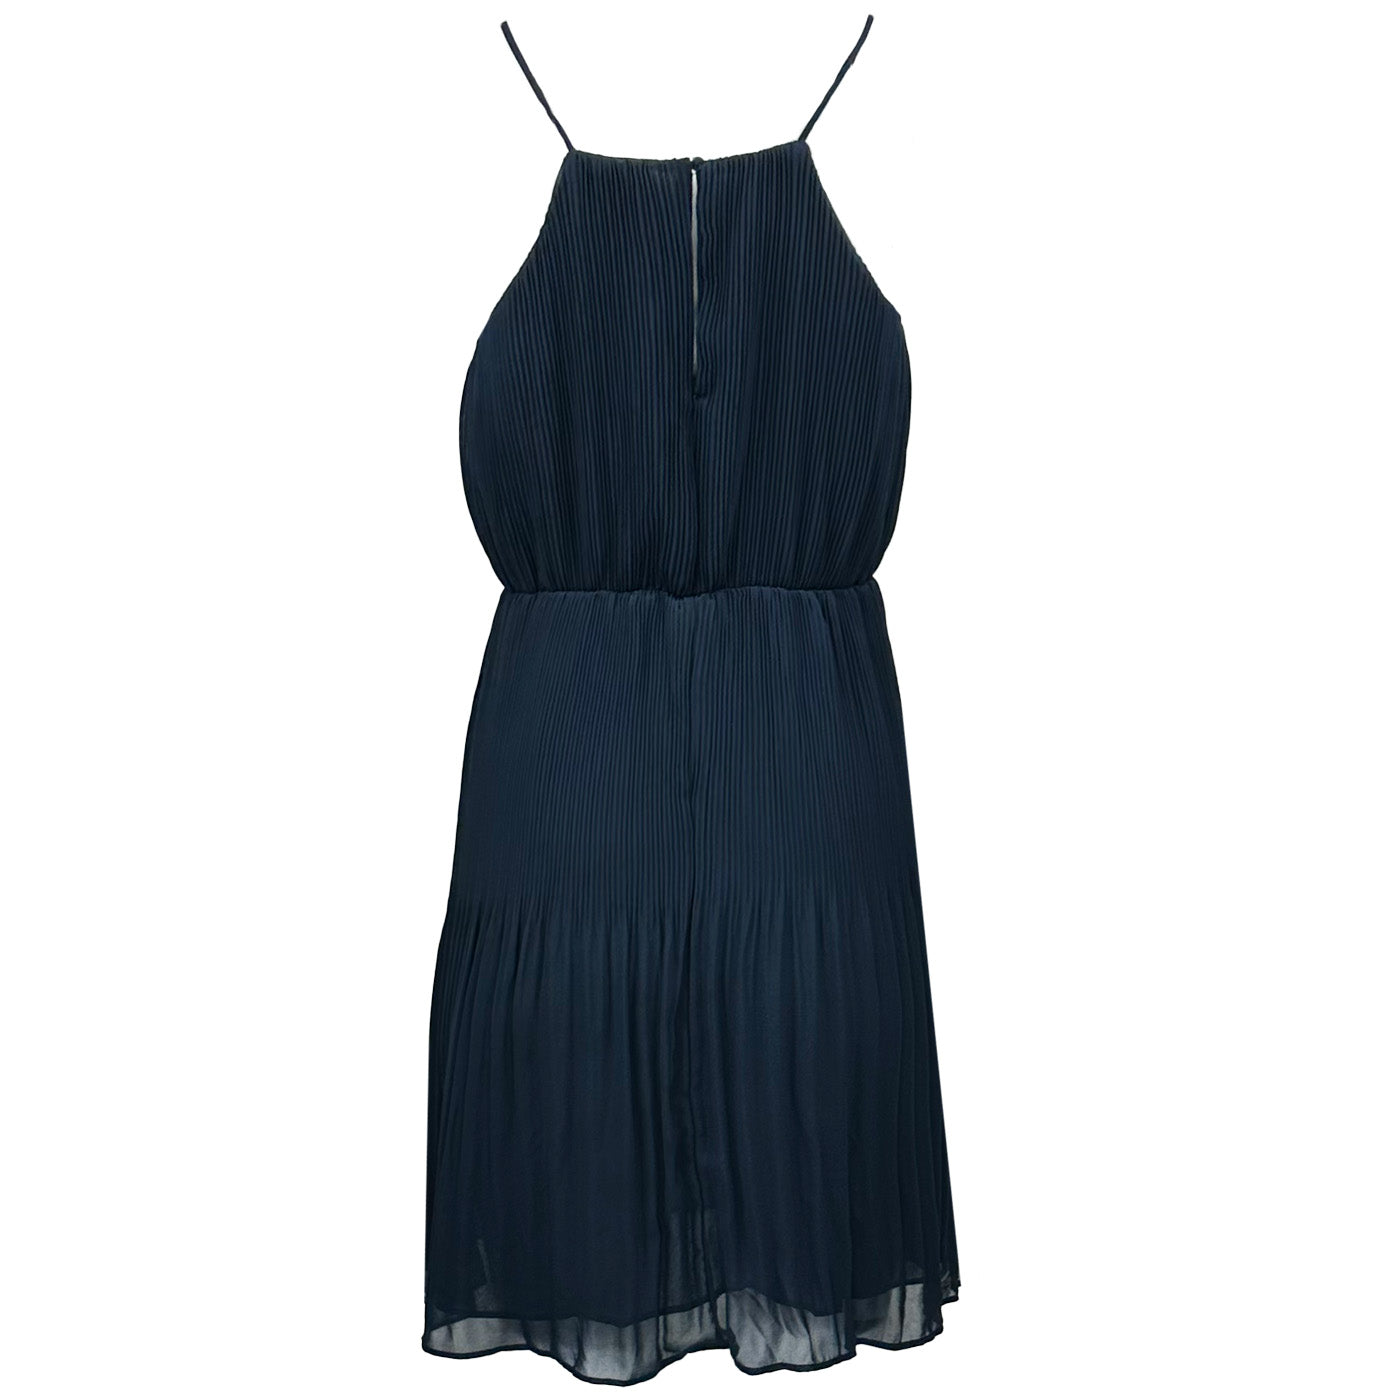 Дамска лятна рокля PEPE JEANS, в син цвят,  лека материя със средна дължина и подплата.